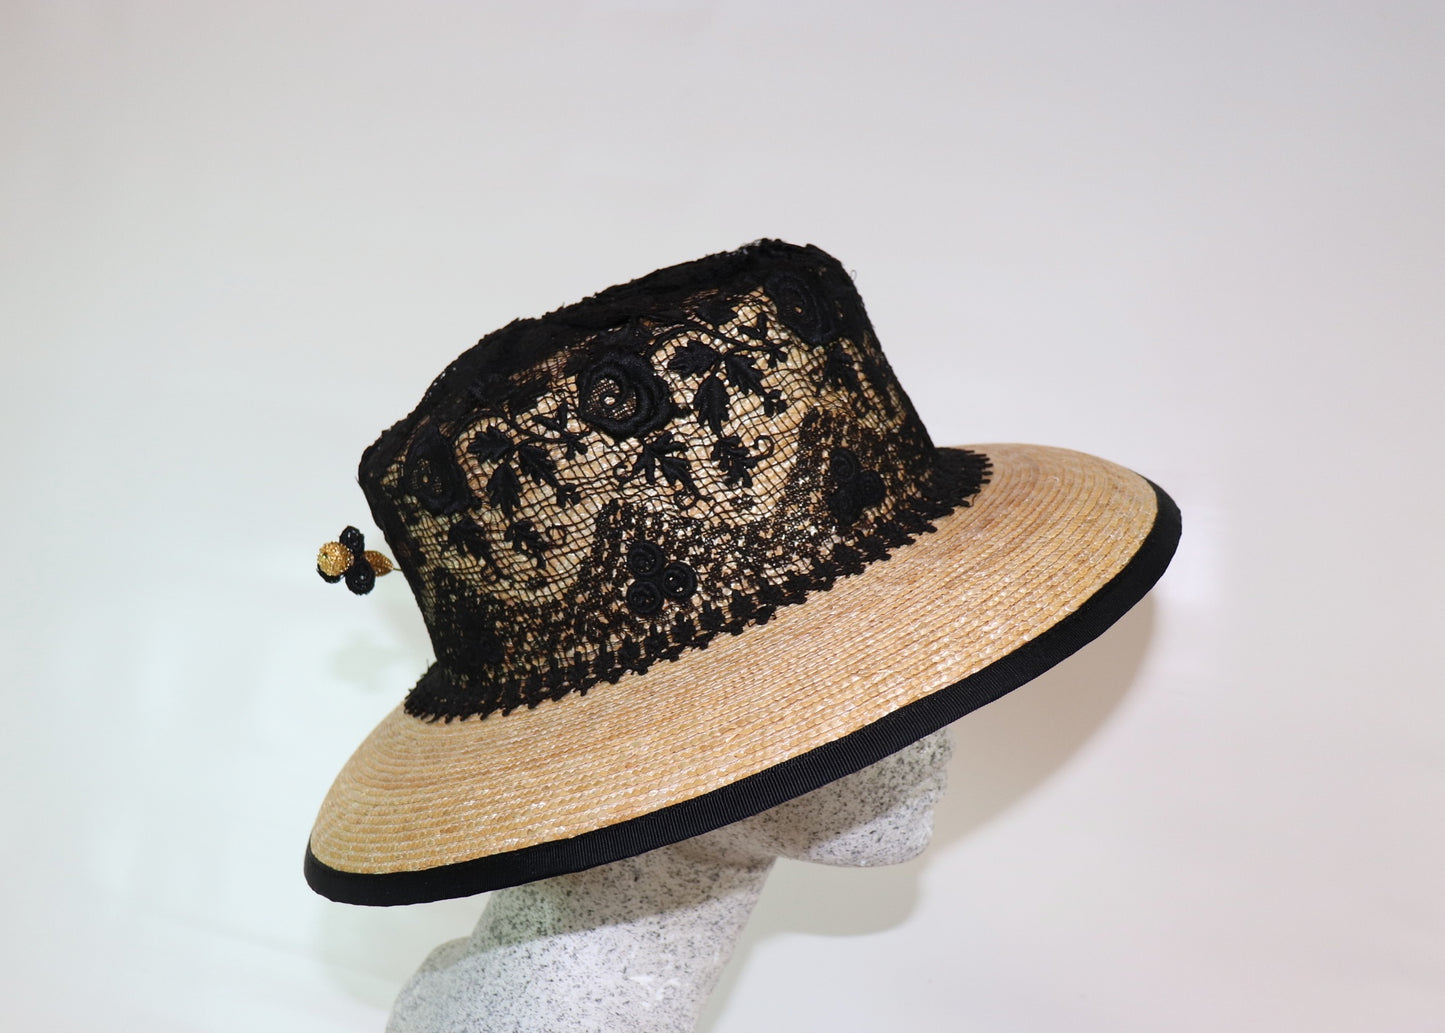 Bortenstrohhut mit schwarzer Spitze - Hutmanufaktur Hanni-Modelle